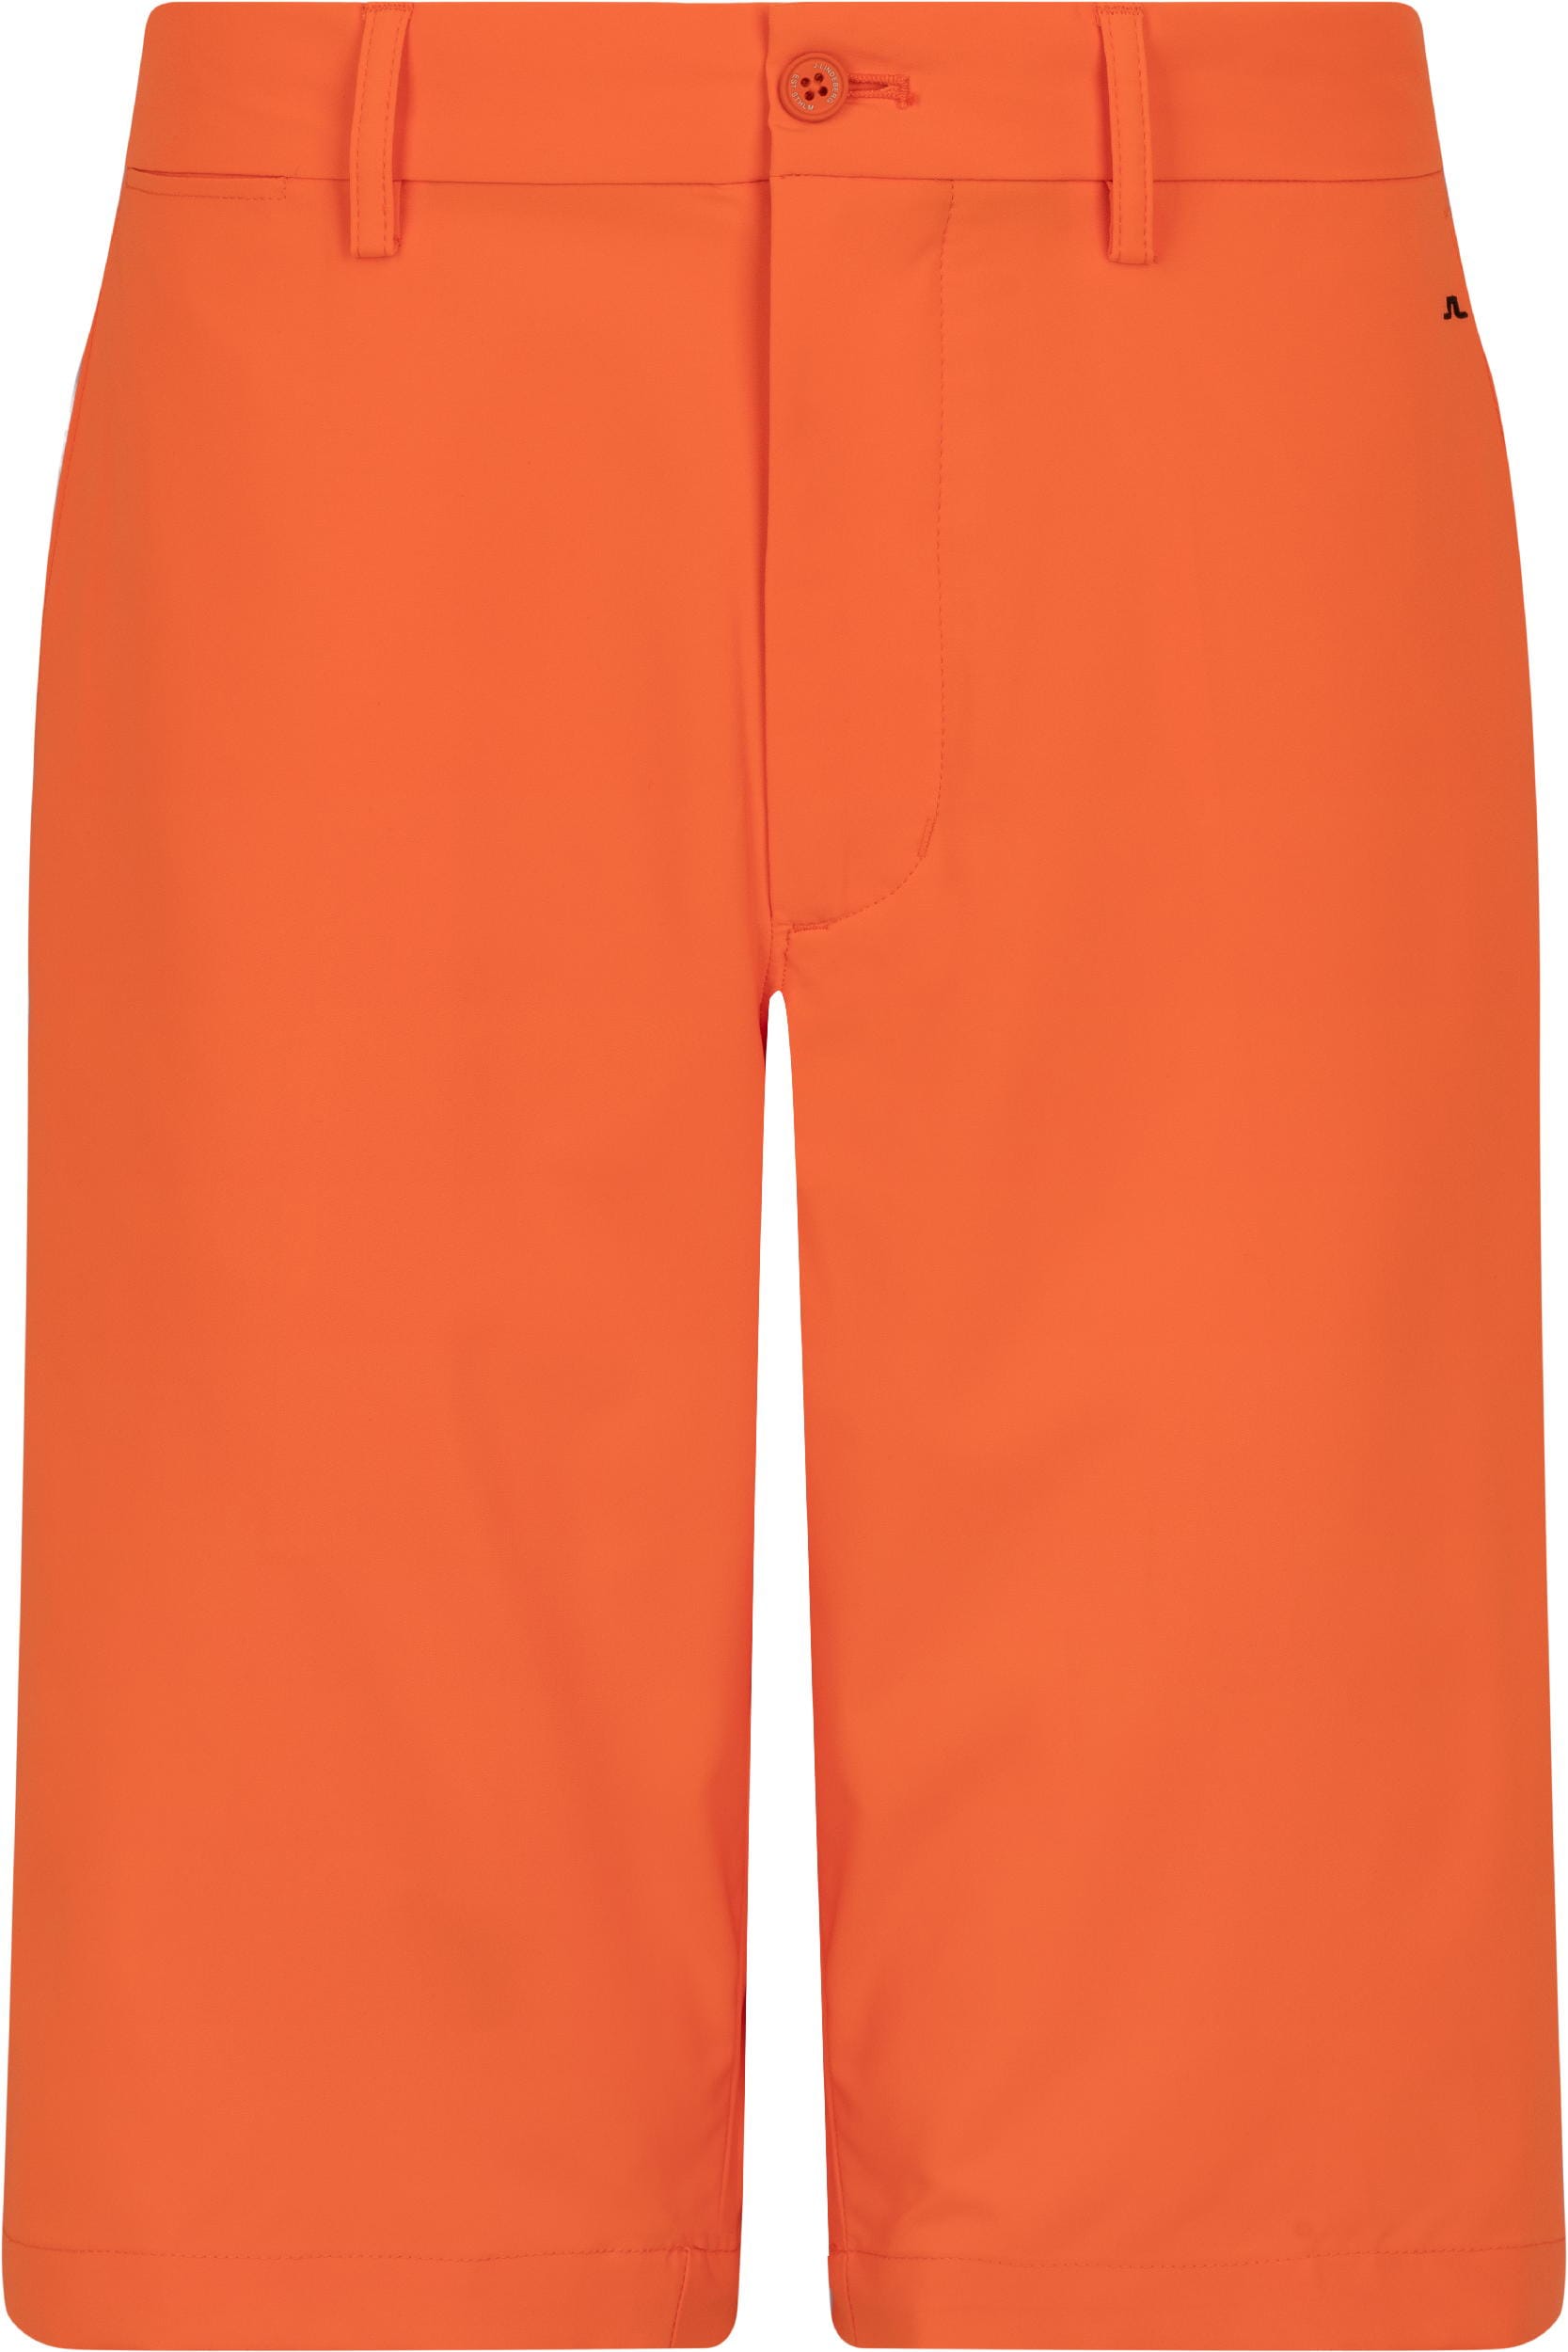 J.Lindeberg Somle Golf Short, orange